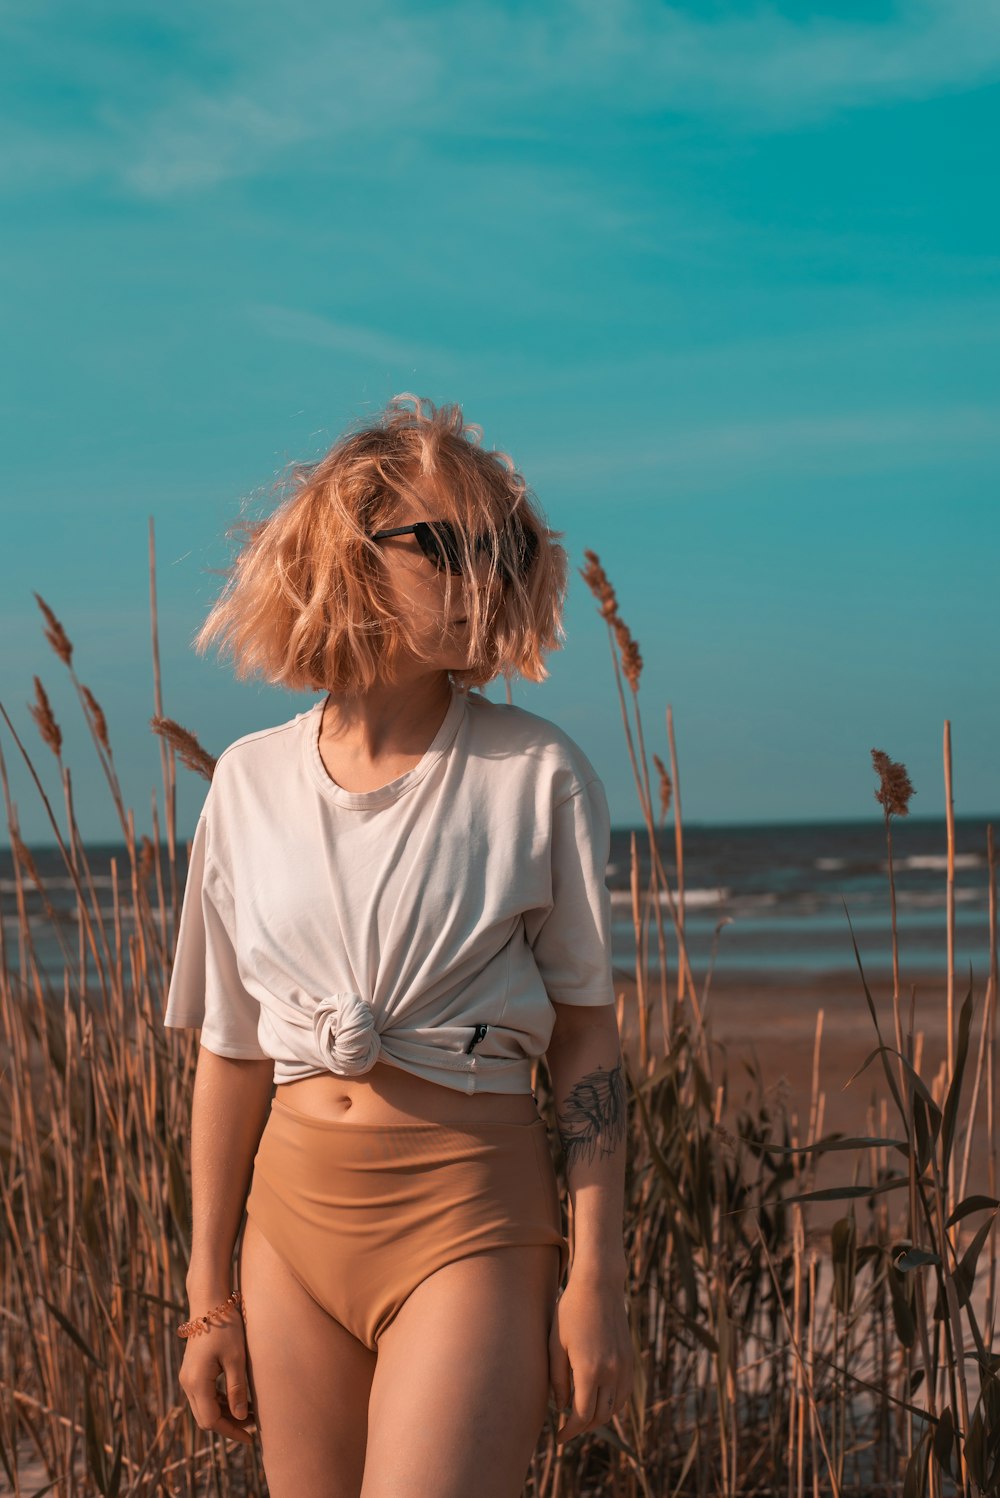 a woman standing on a beach next to tall grass